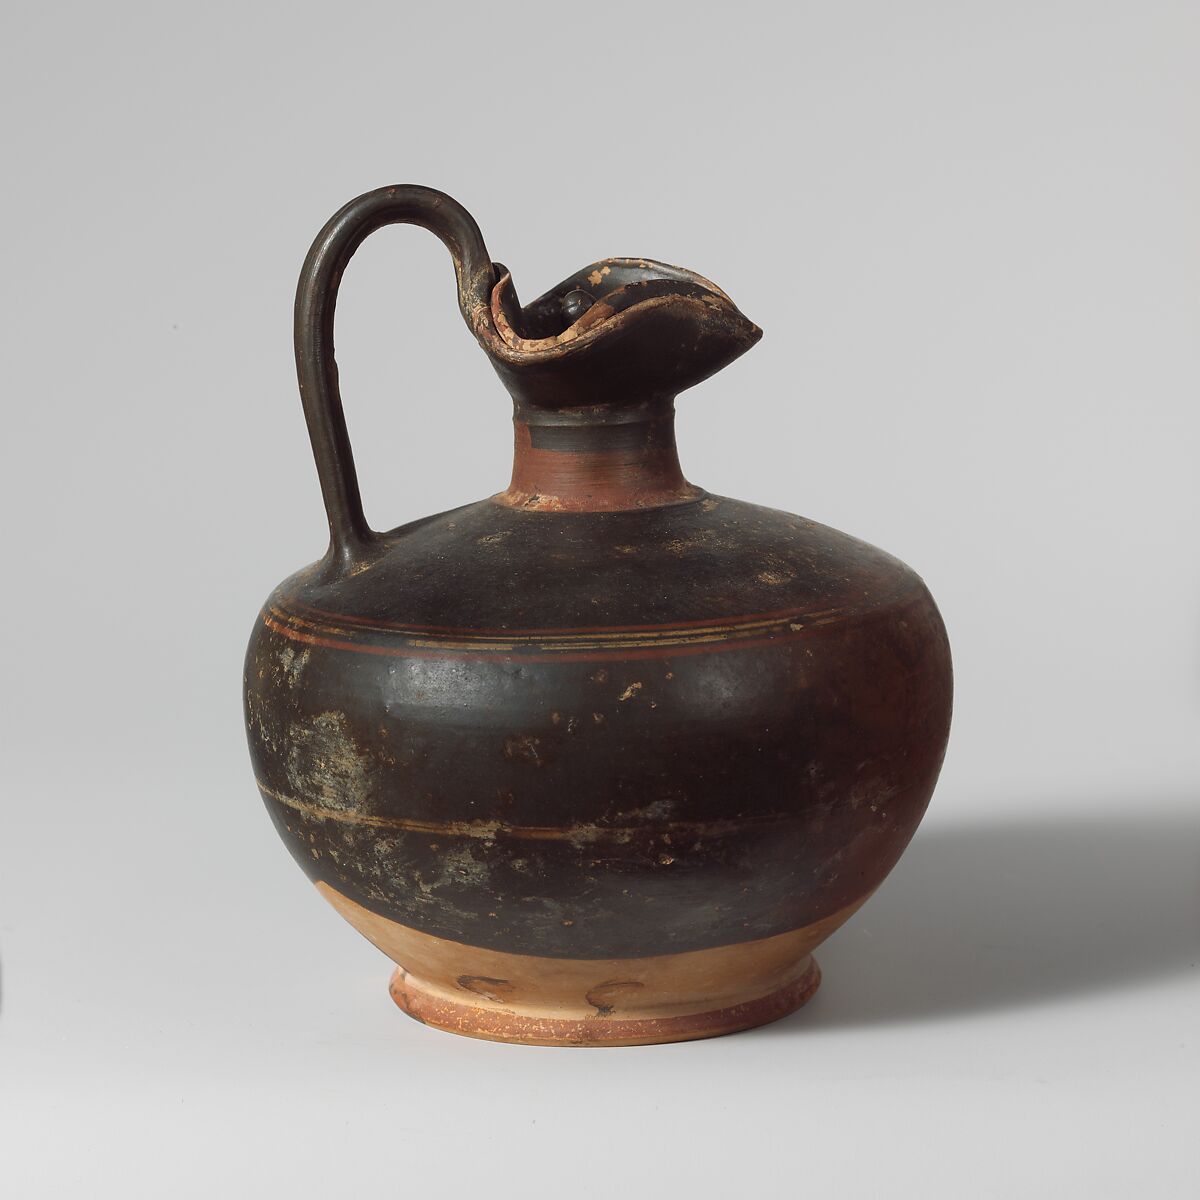 Terracotta oinochoe (jug) with lid, Terracotta, Greek, Corinthian 